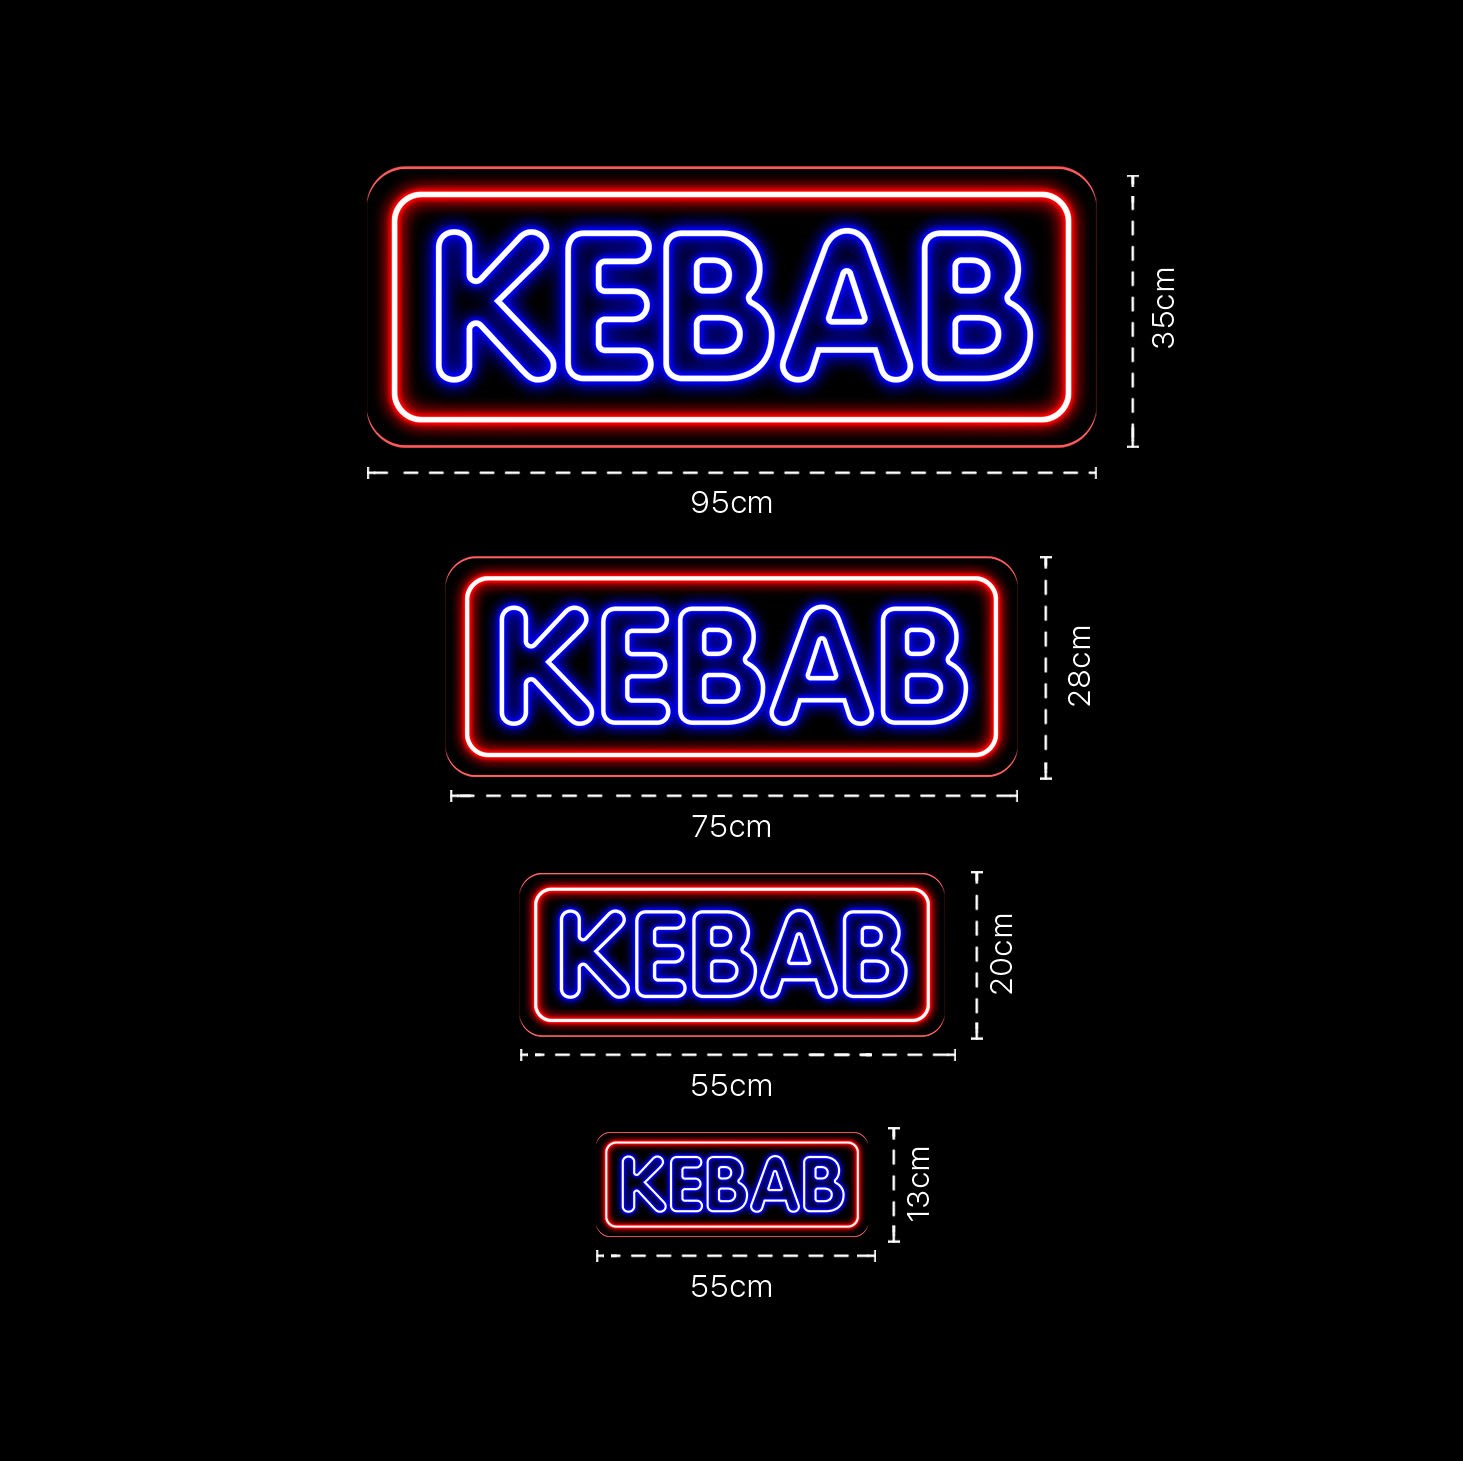 Immagine di Neon per ristorante Kebab